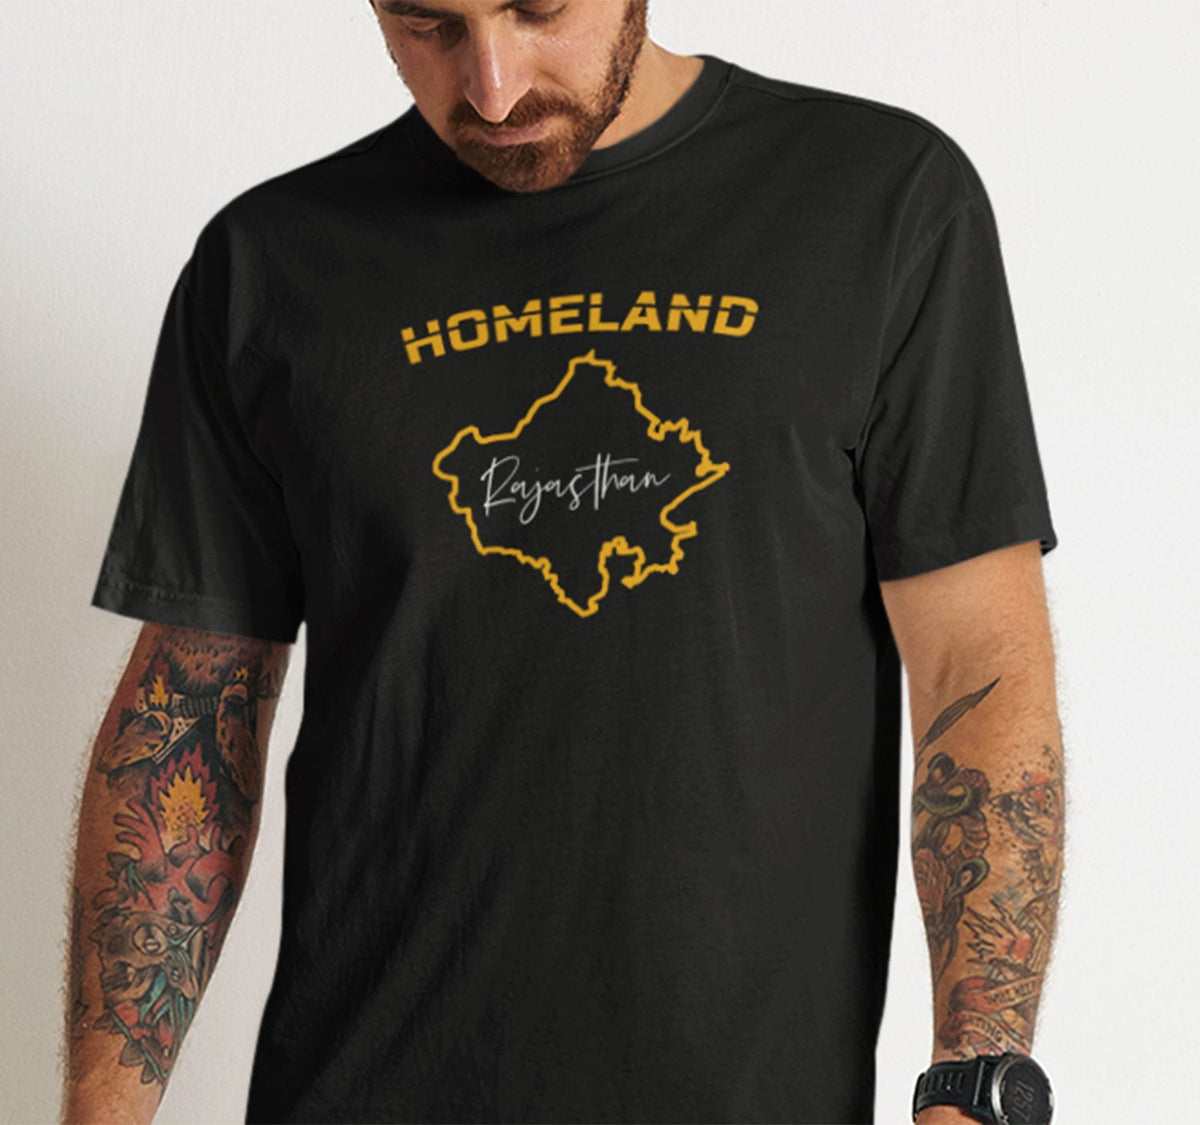 Homeland Rajasthan T Shirt